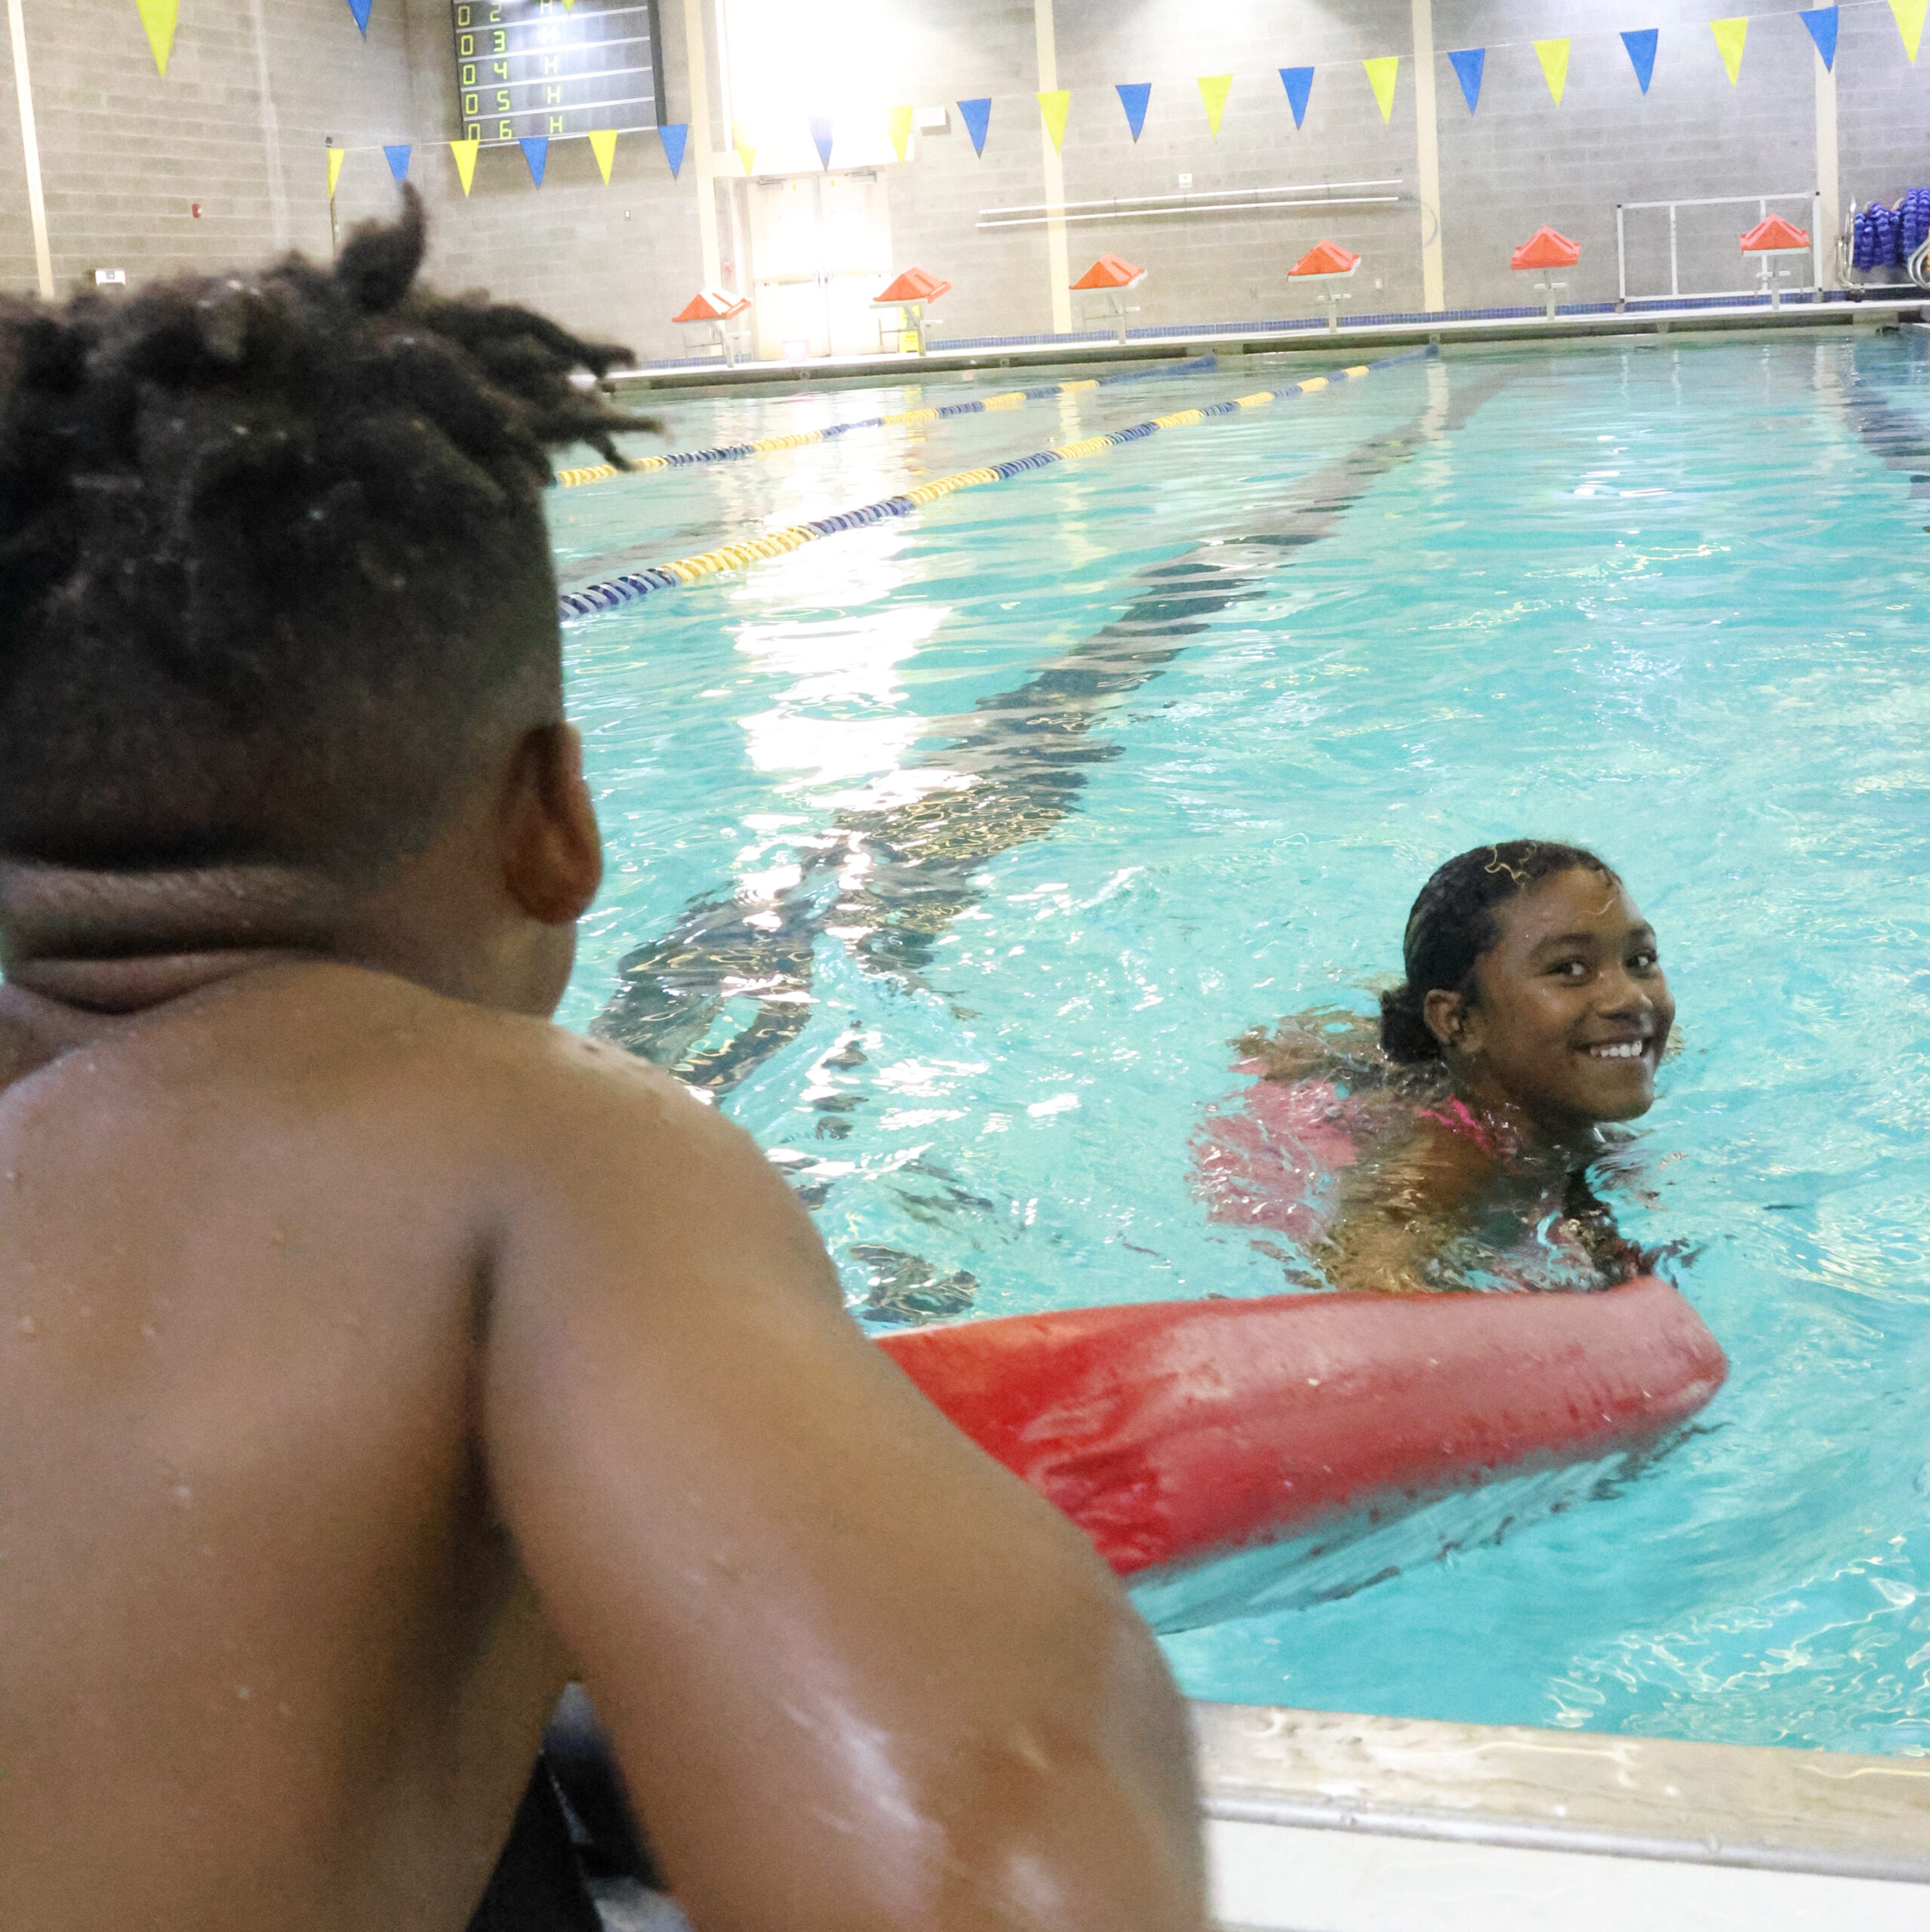 Drowning prevention awareness for kids. Teaching children safe